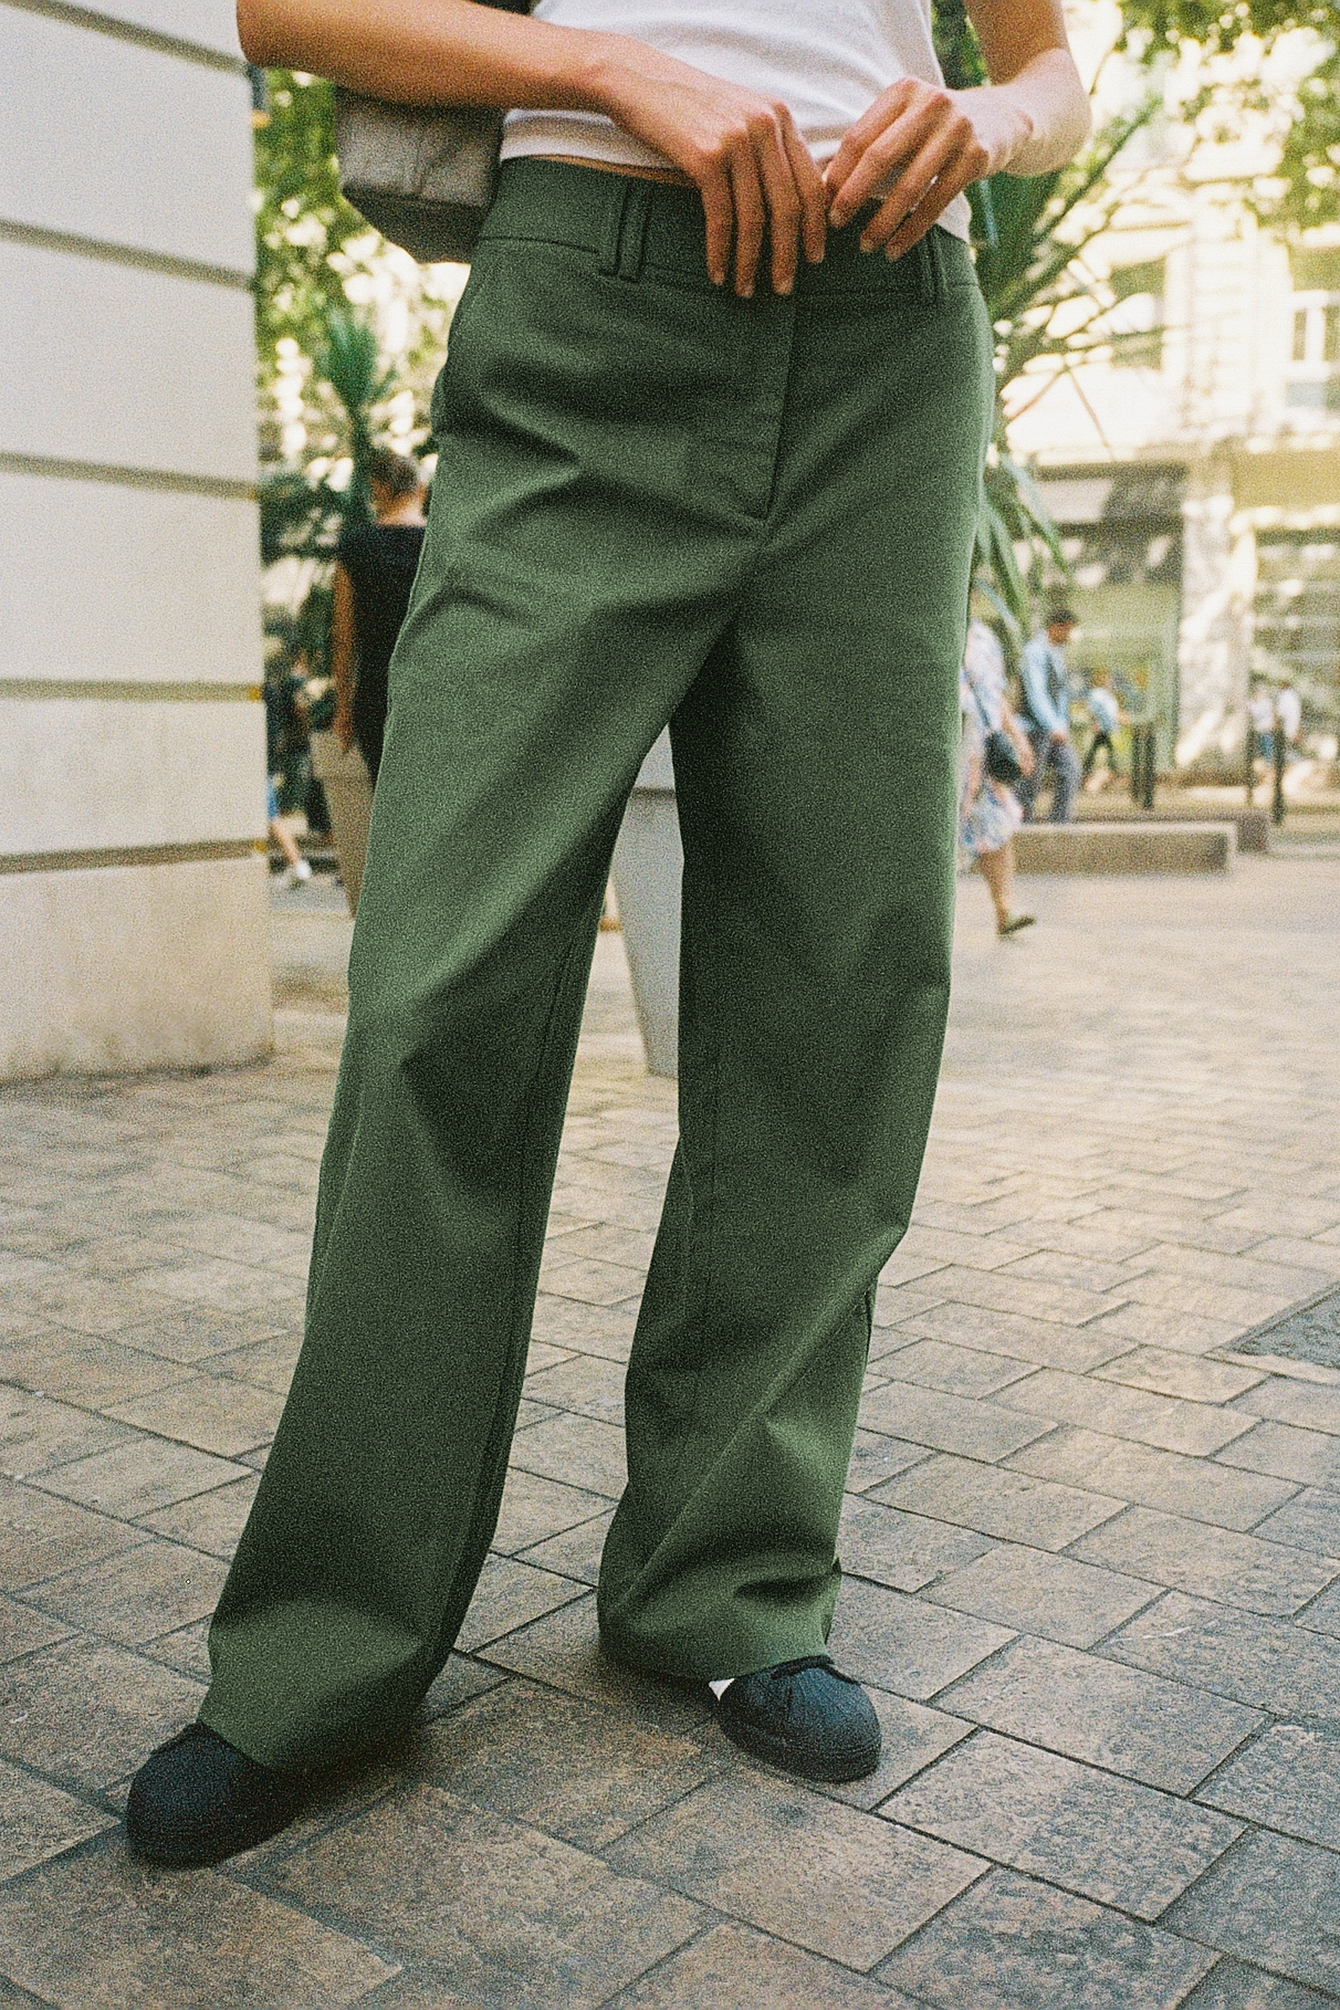 Green 42                  EU WOMEN FASHION Trousers Chino trouser Straight discount 77% Cortefiel Chino trouser 